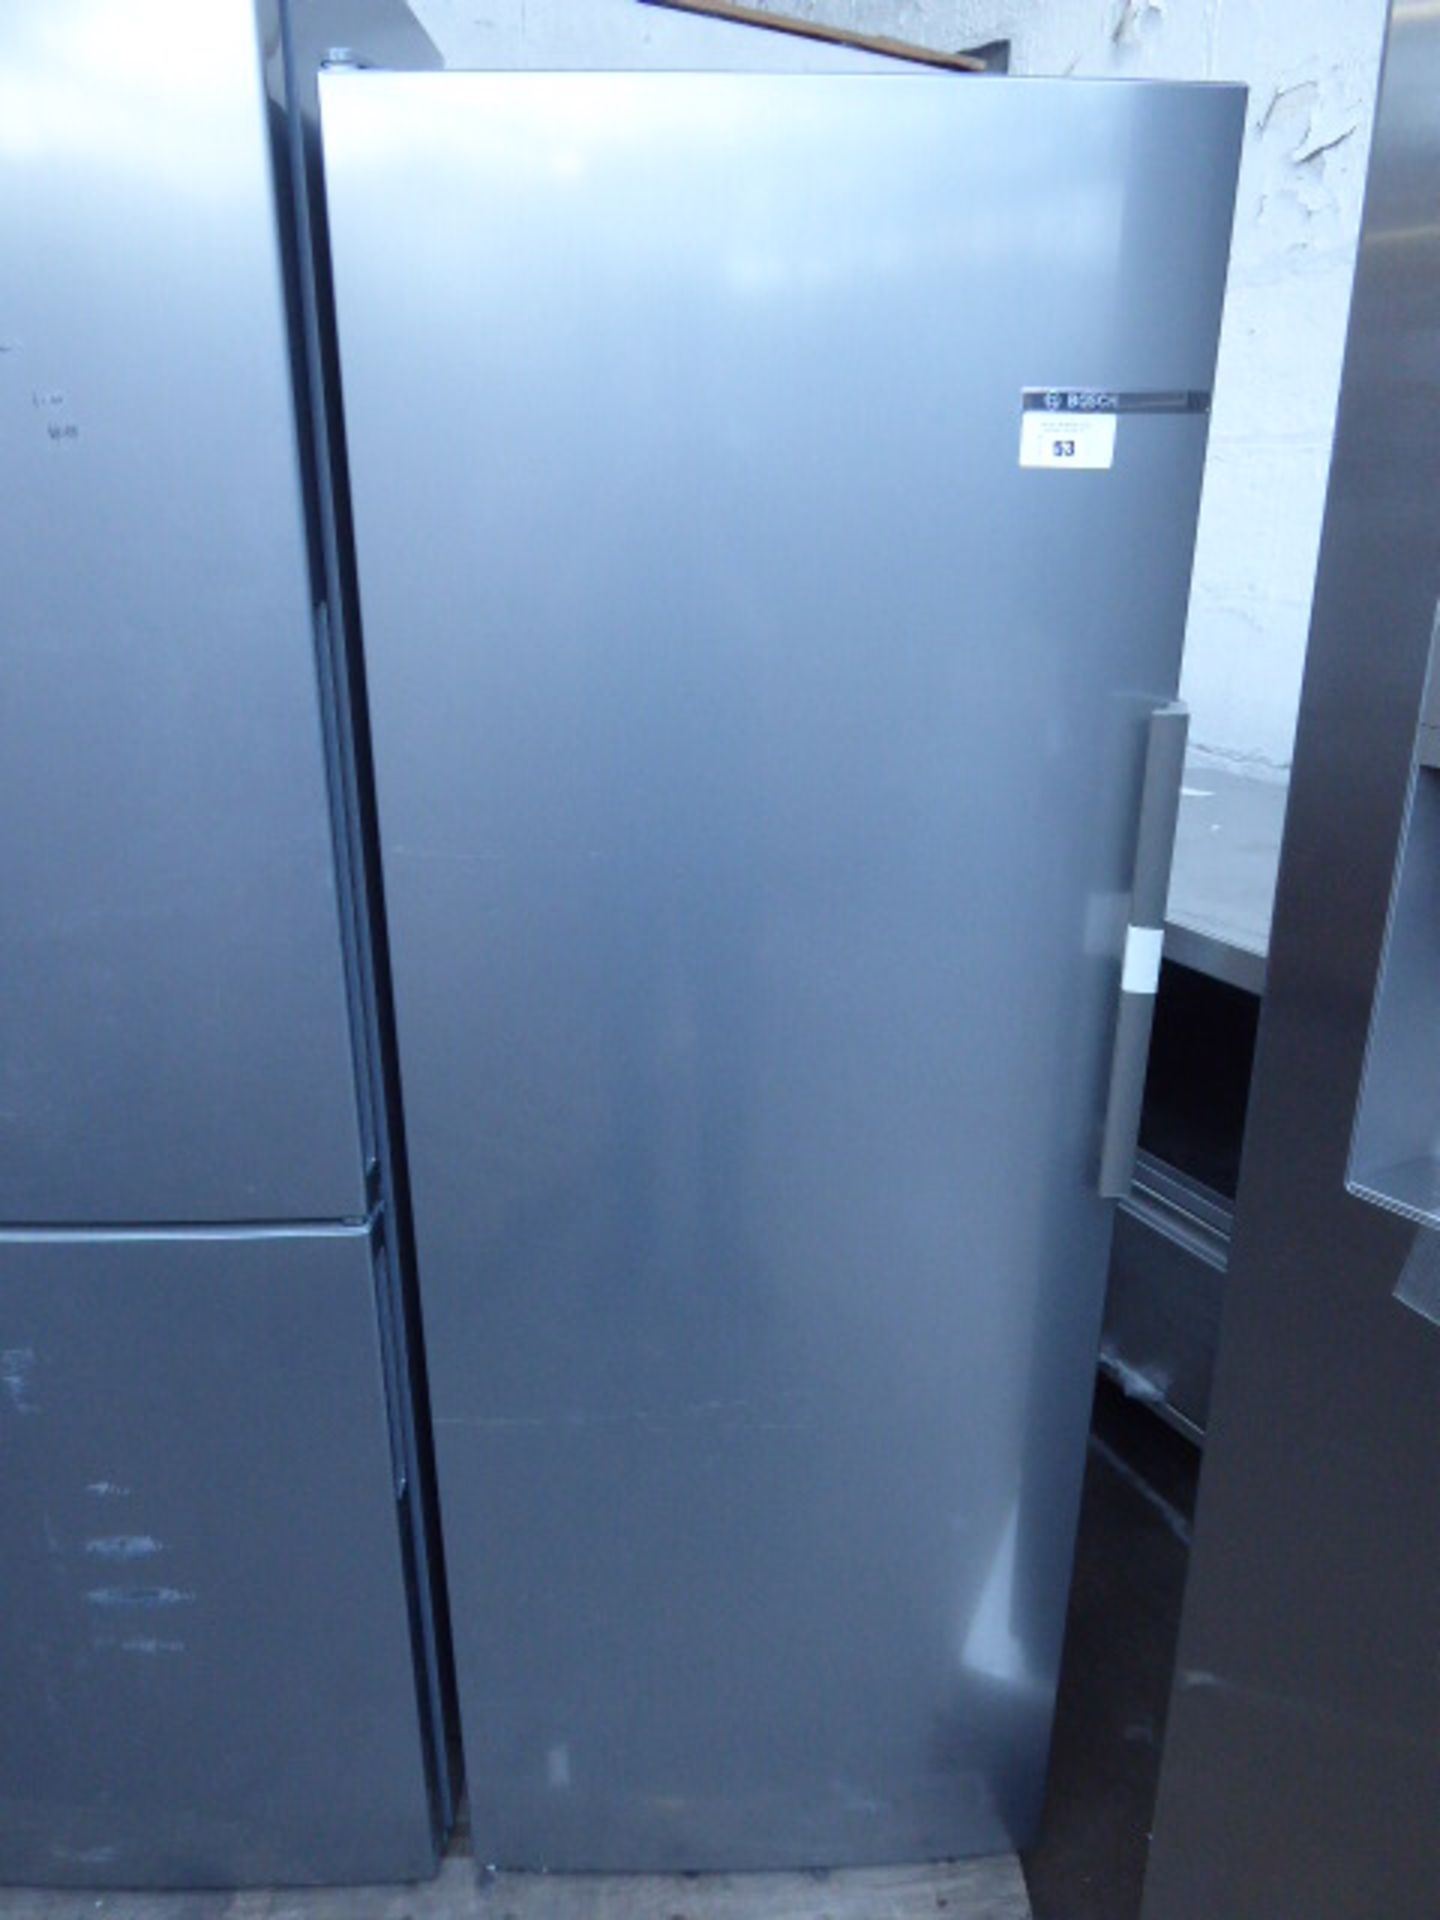 KSV29VLEP-B Bosch Free-standing refrigerator